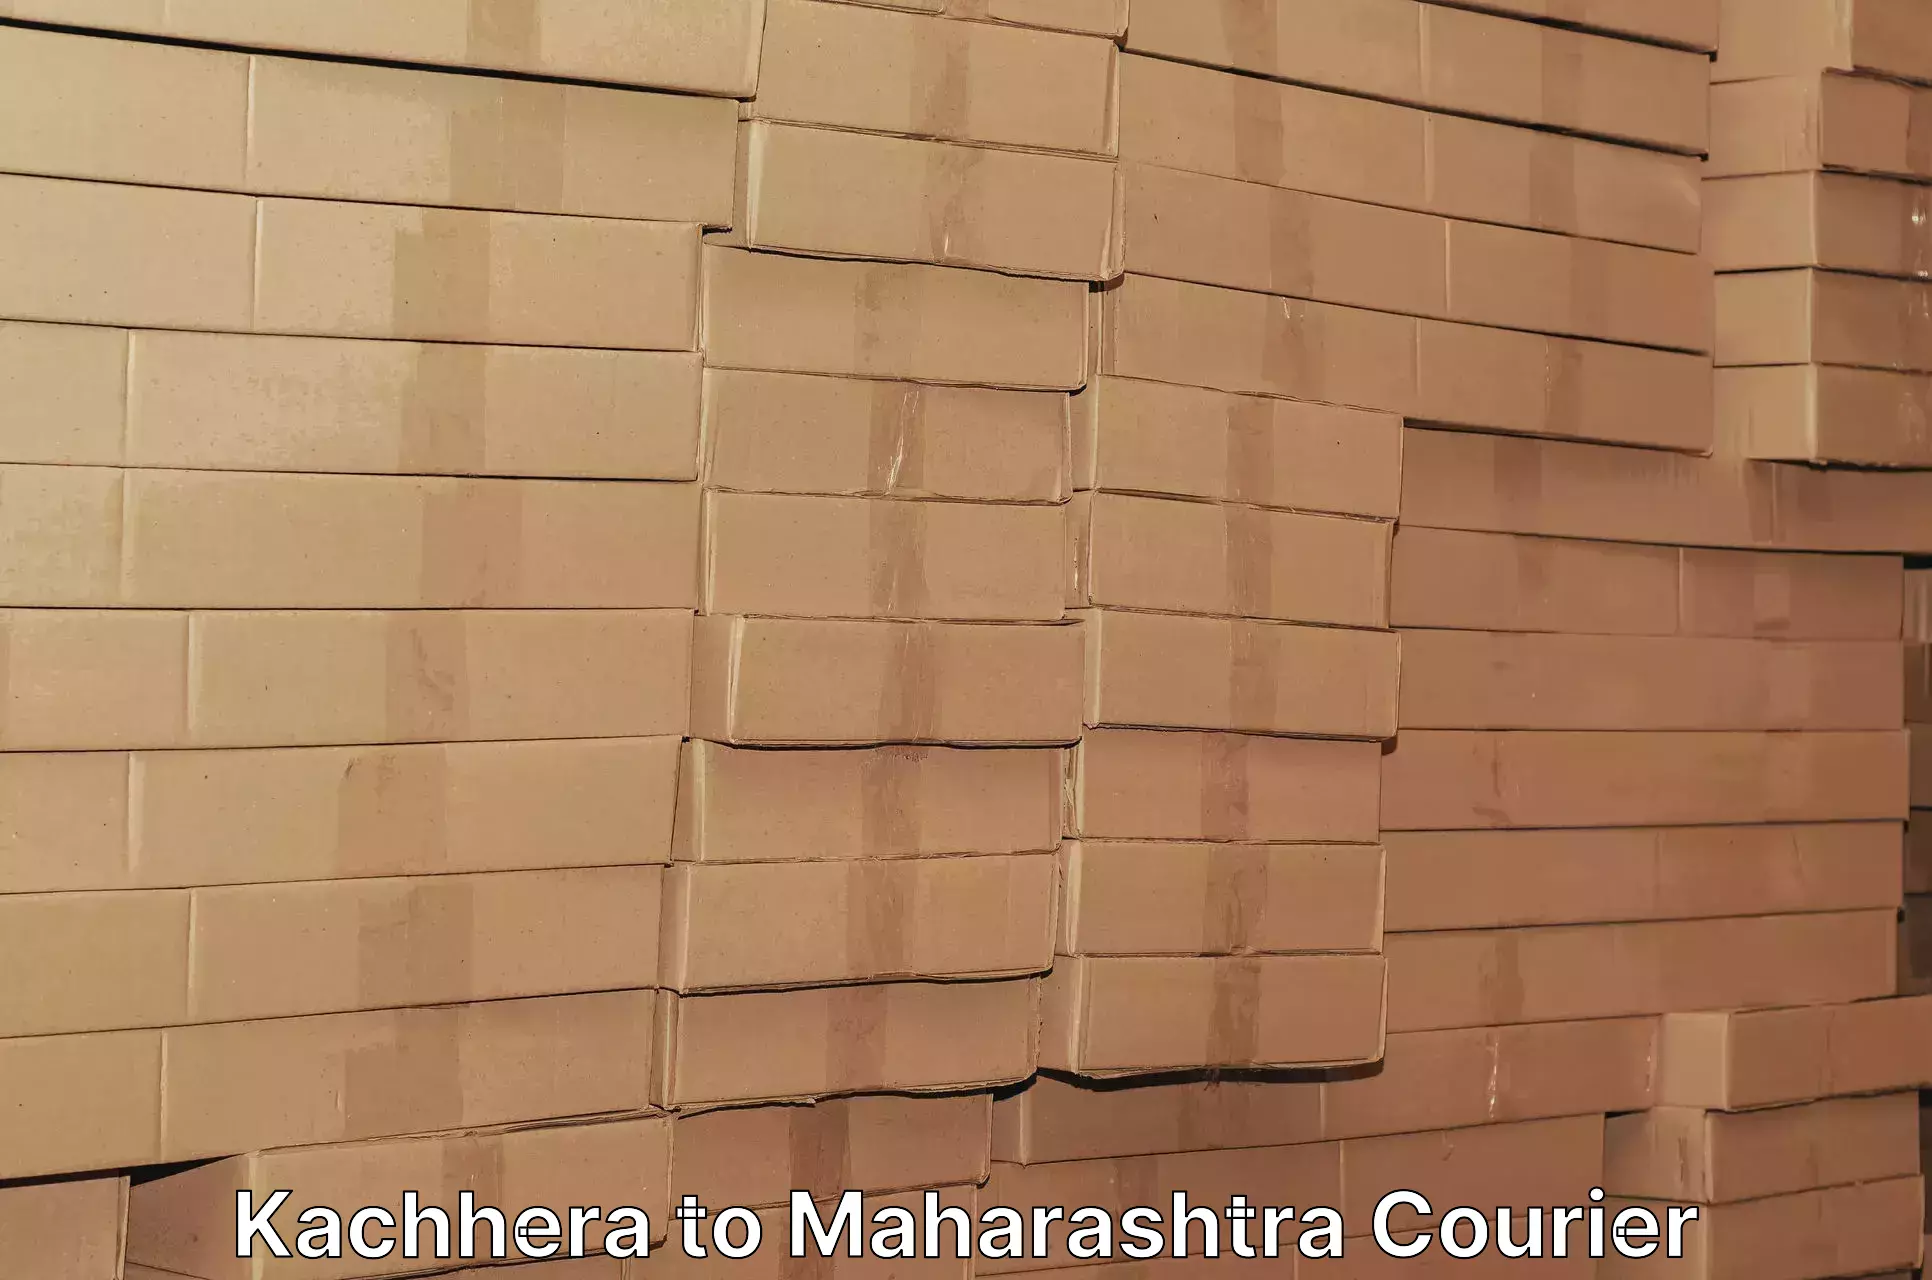 Courier app Kachhera to Ballarpur